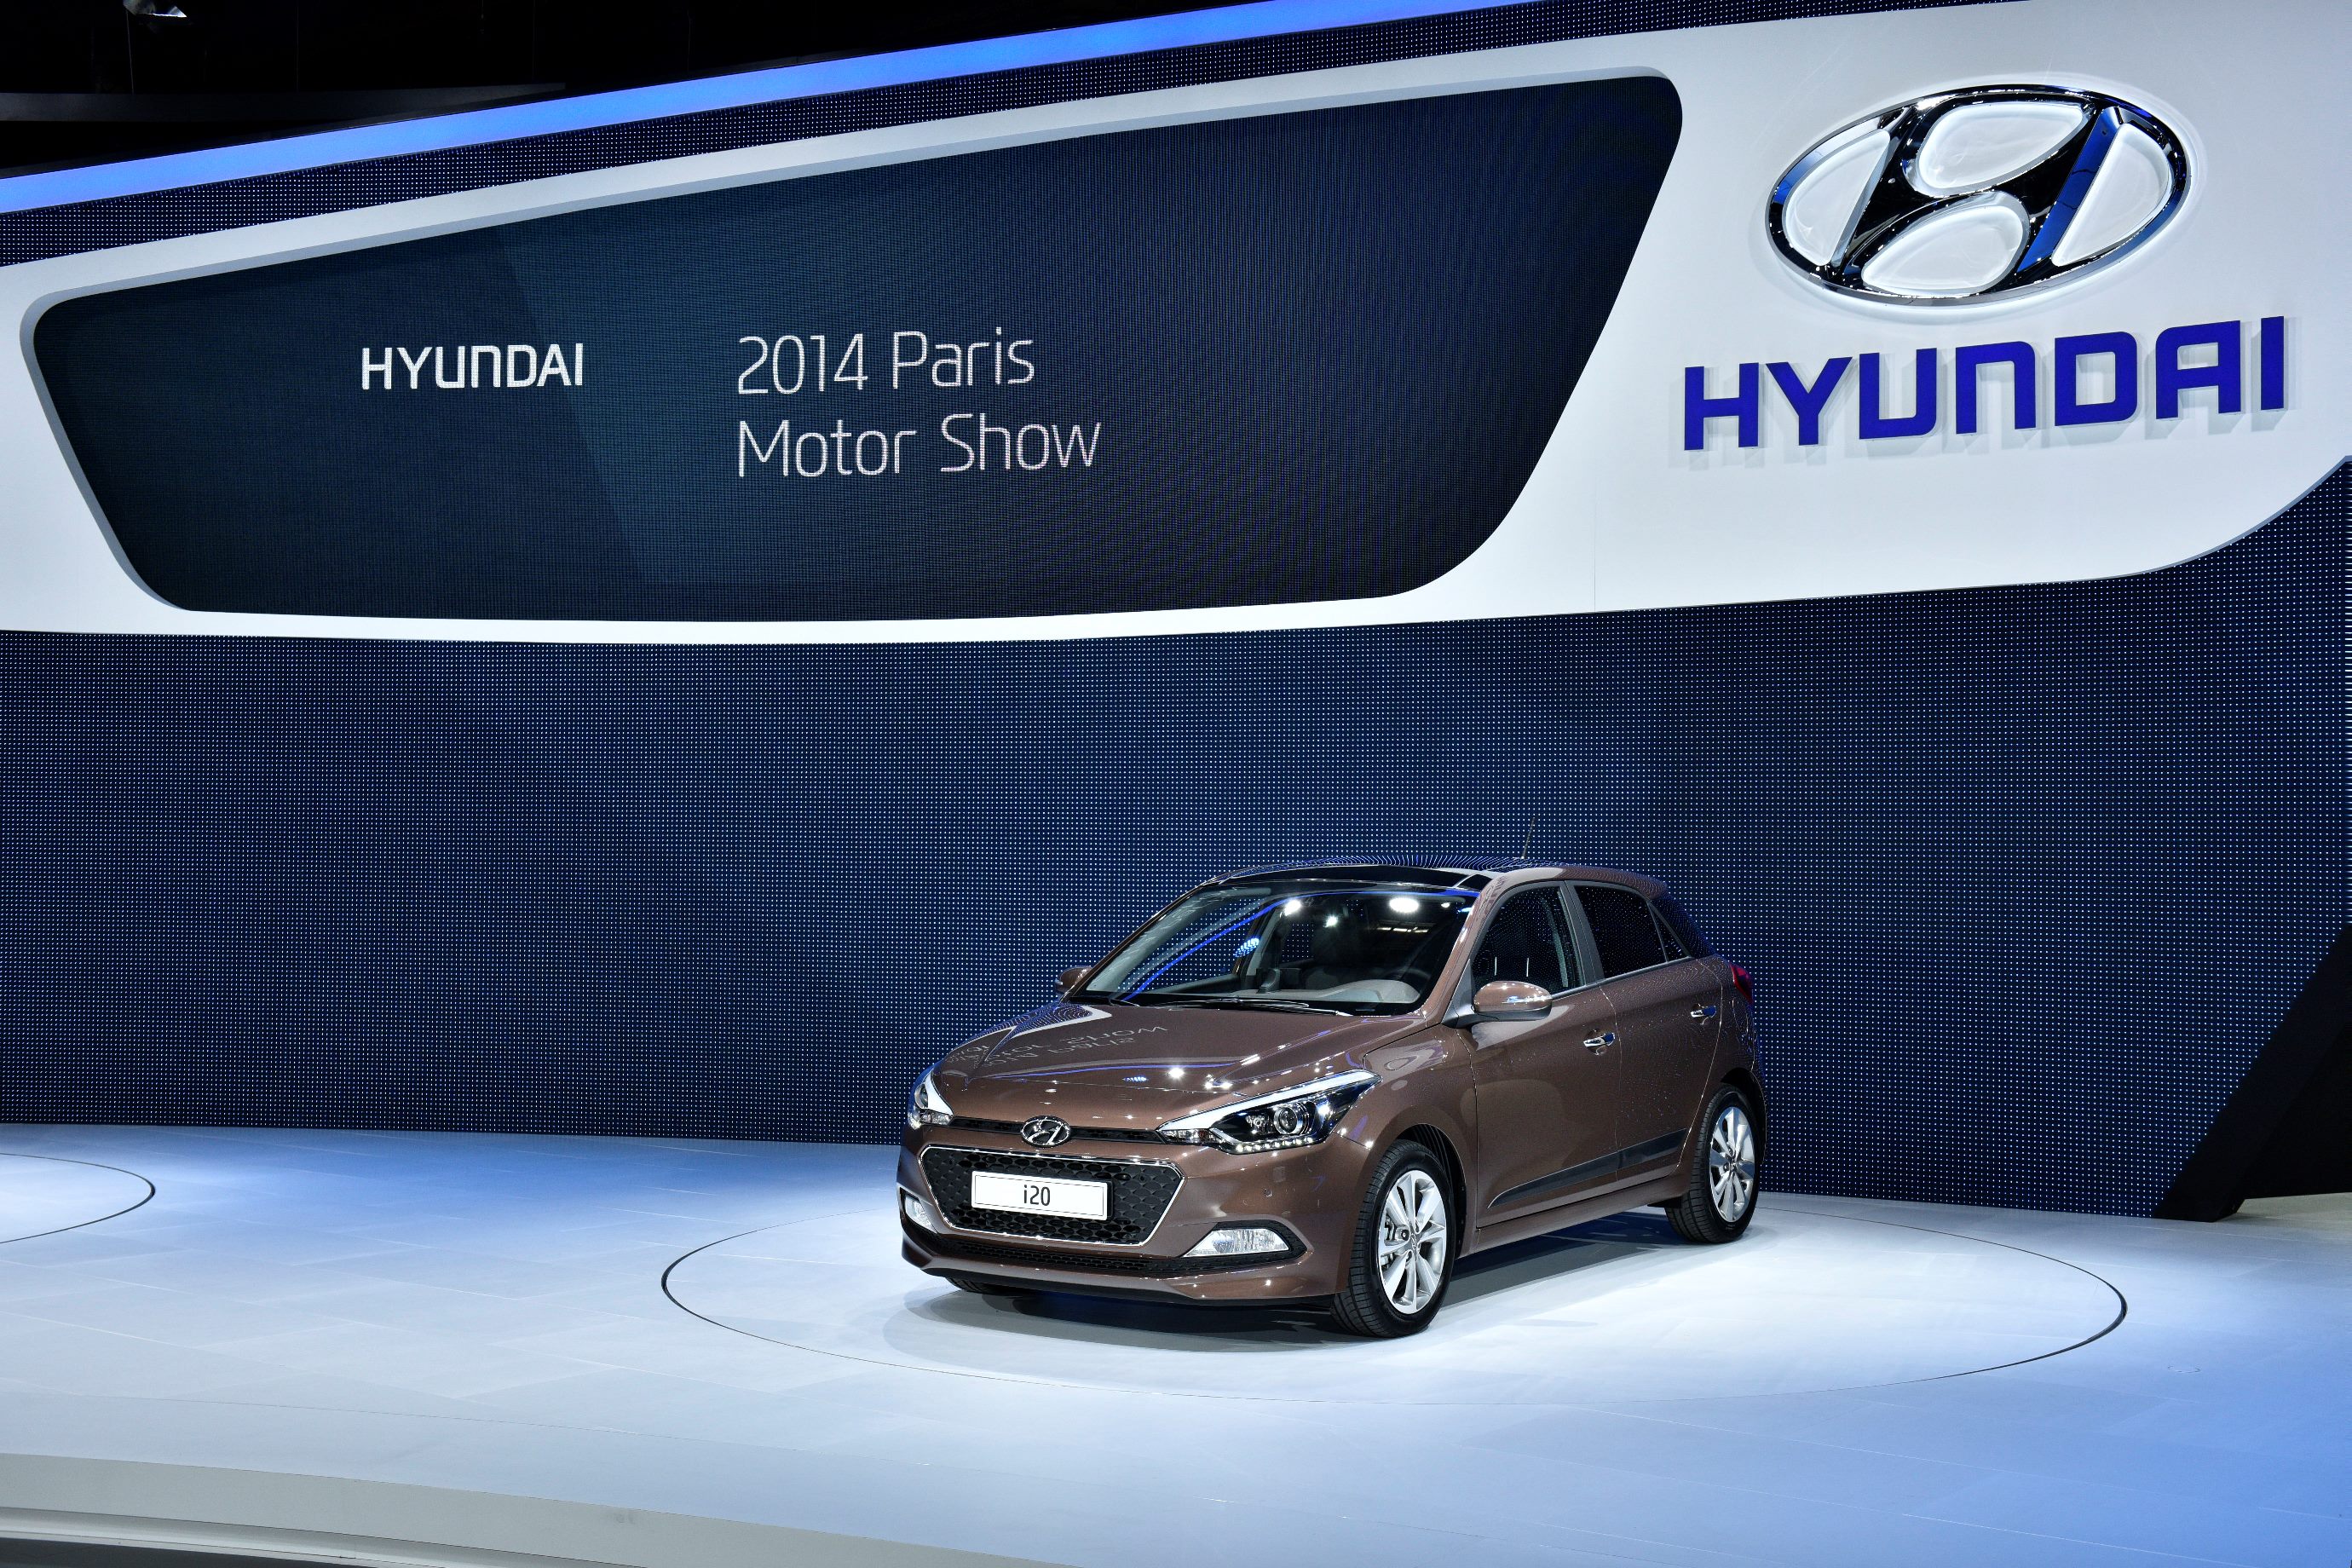 Hyundai Motor na Salonu automobila u Parizu 2014.